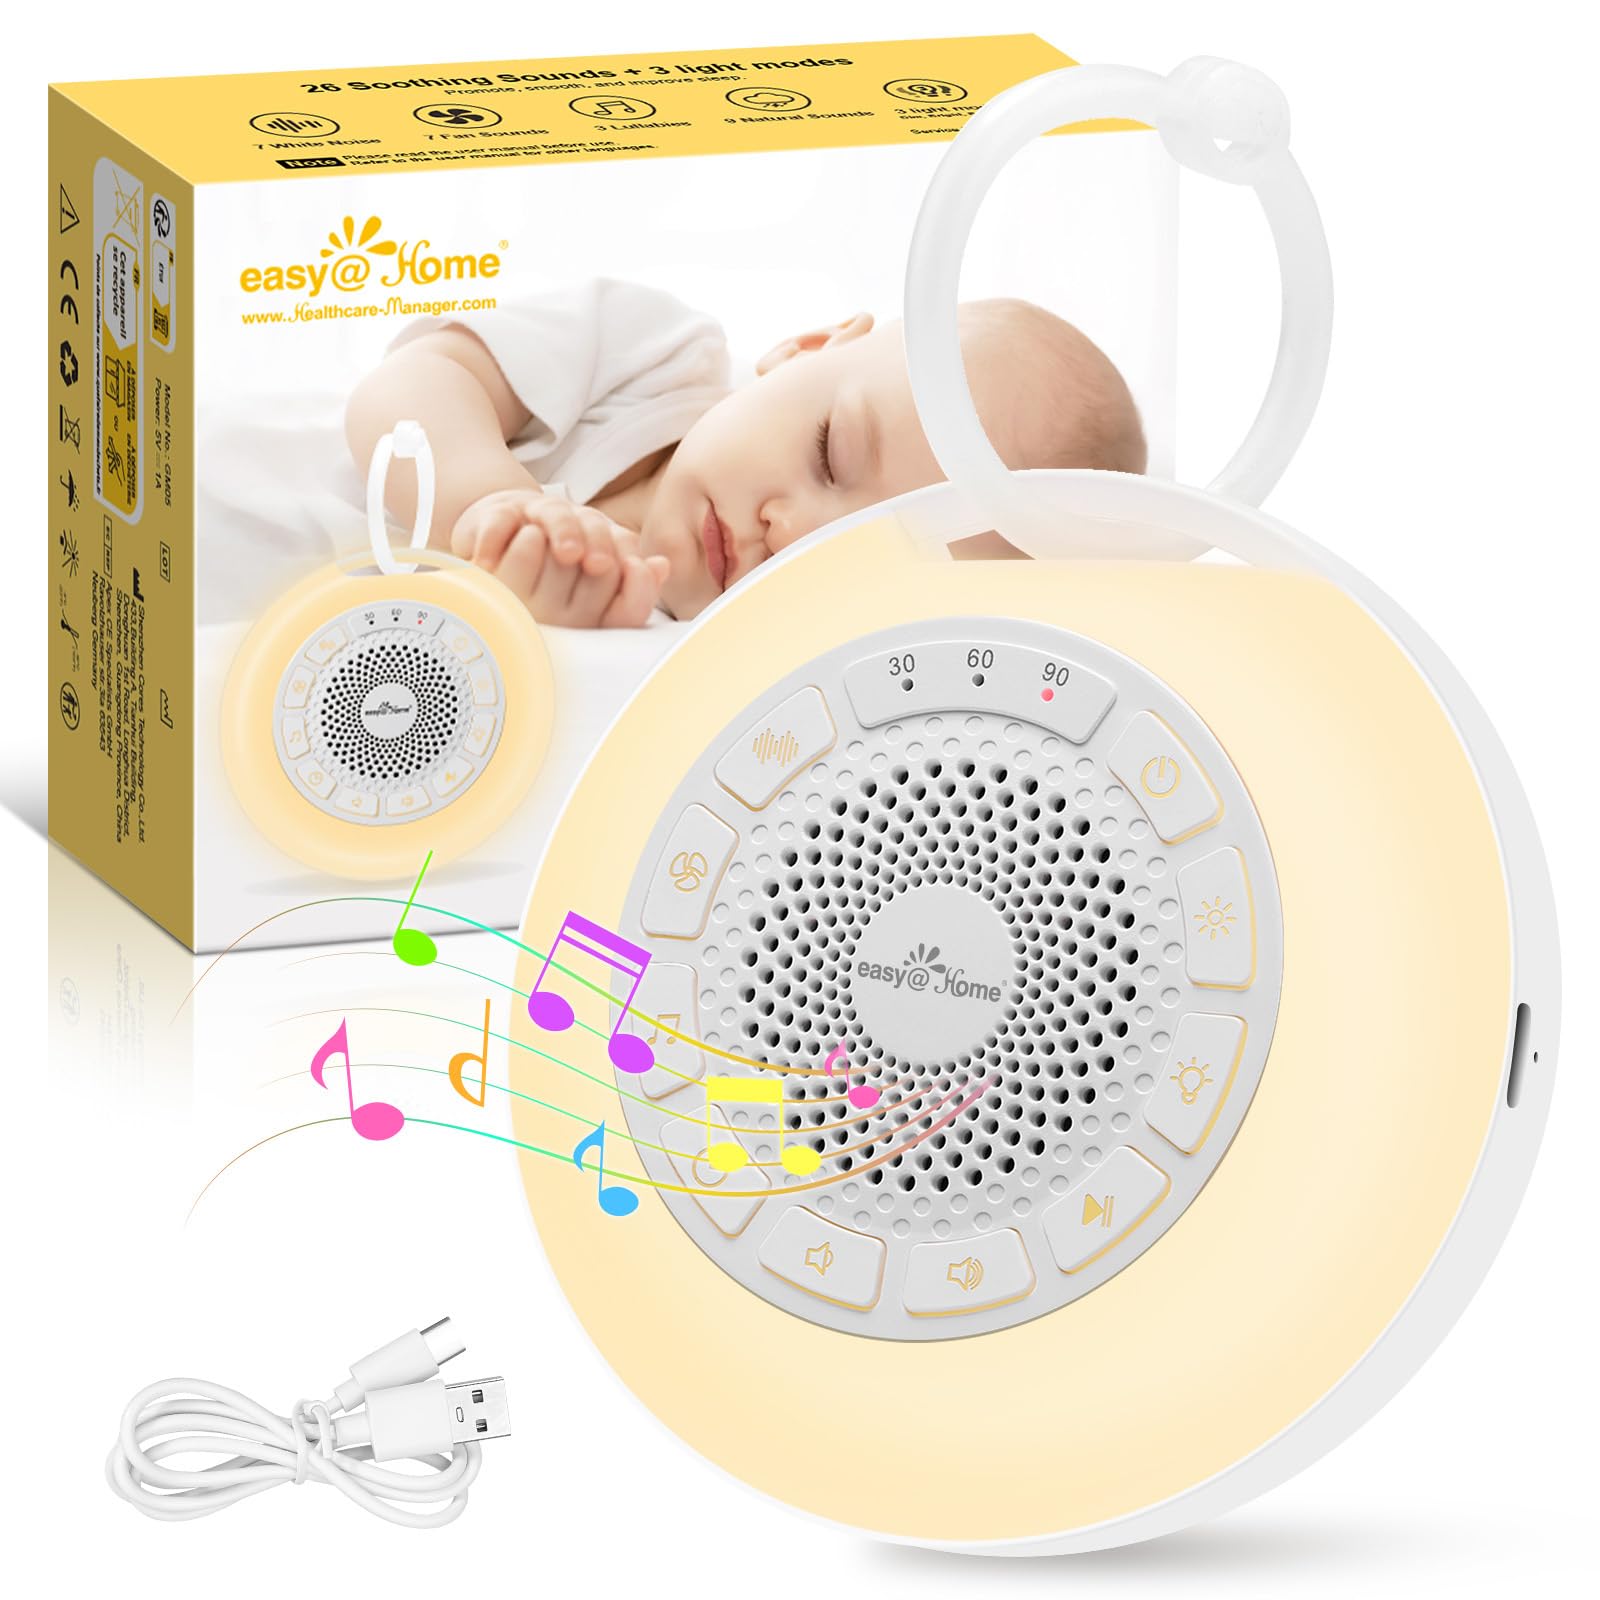 Easy@Home White Noise Machine: Tragbare Einschlafhilfe Babys mit weißem Rauschen | Nachtlicht | 26 Beruhigende Schlaflieder & Naturgeräusche | 3 Timer-Einstellungen | 7 Bunte Beleuchtung & USB